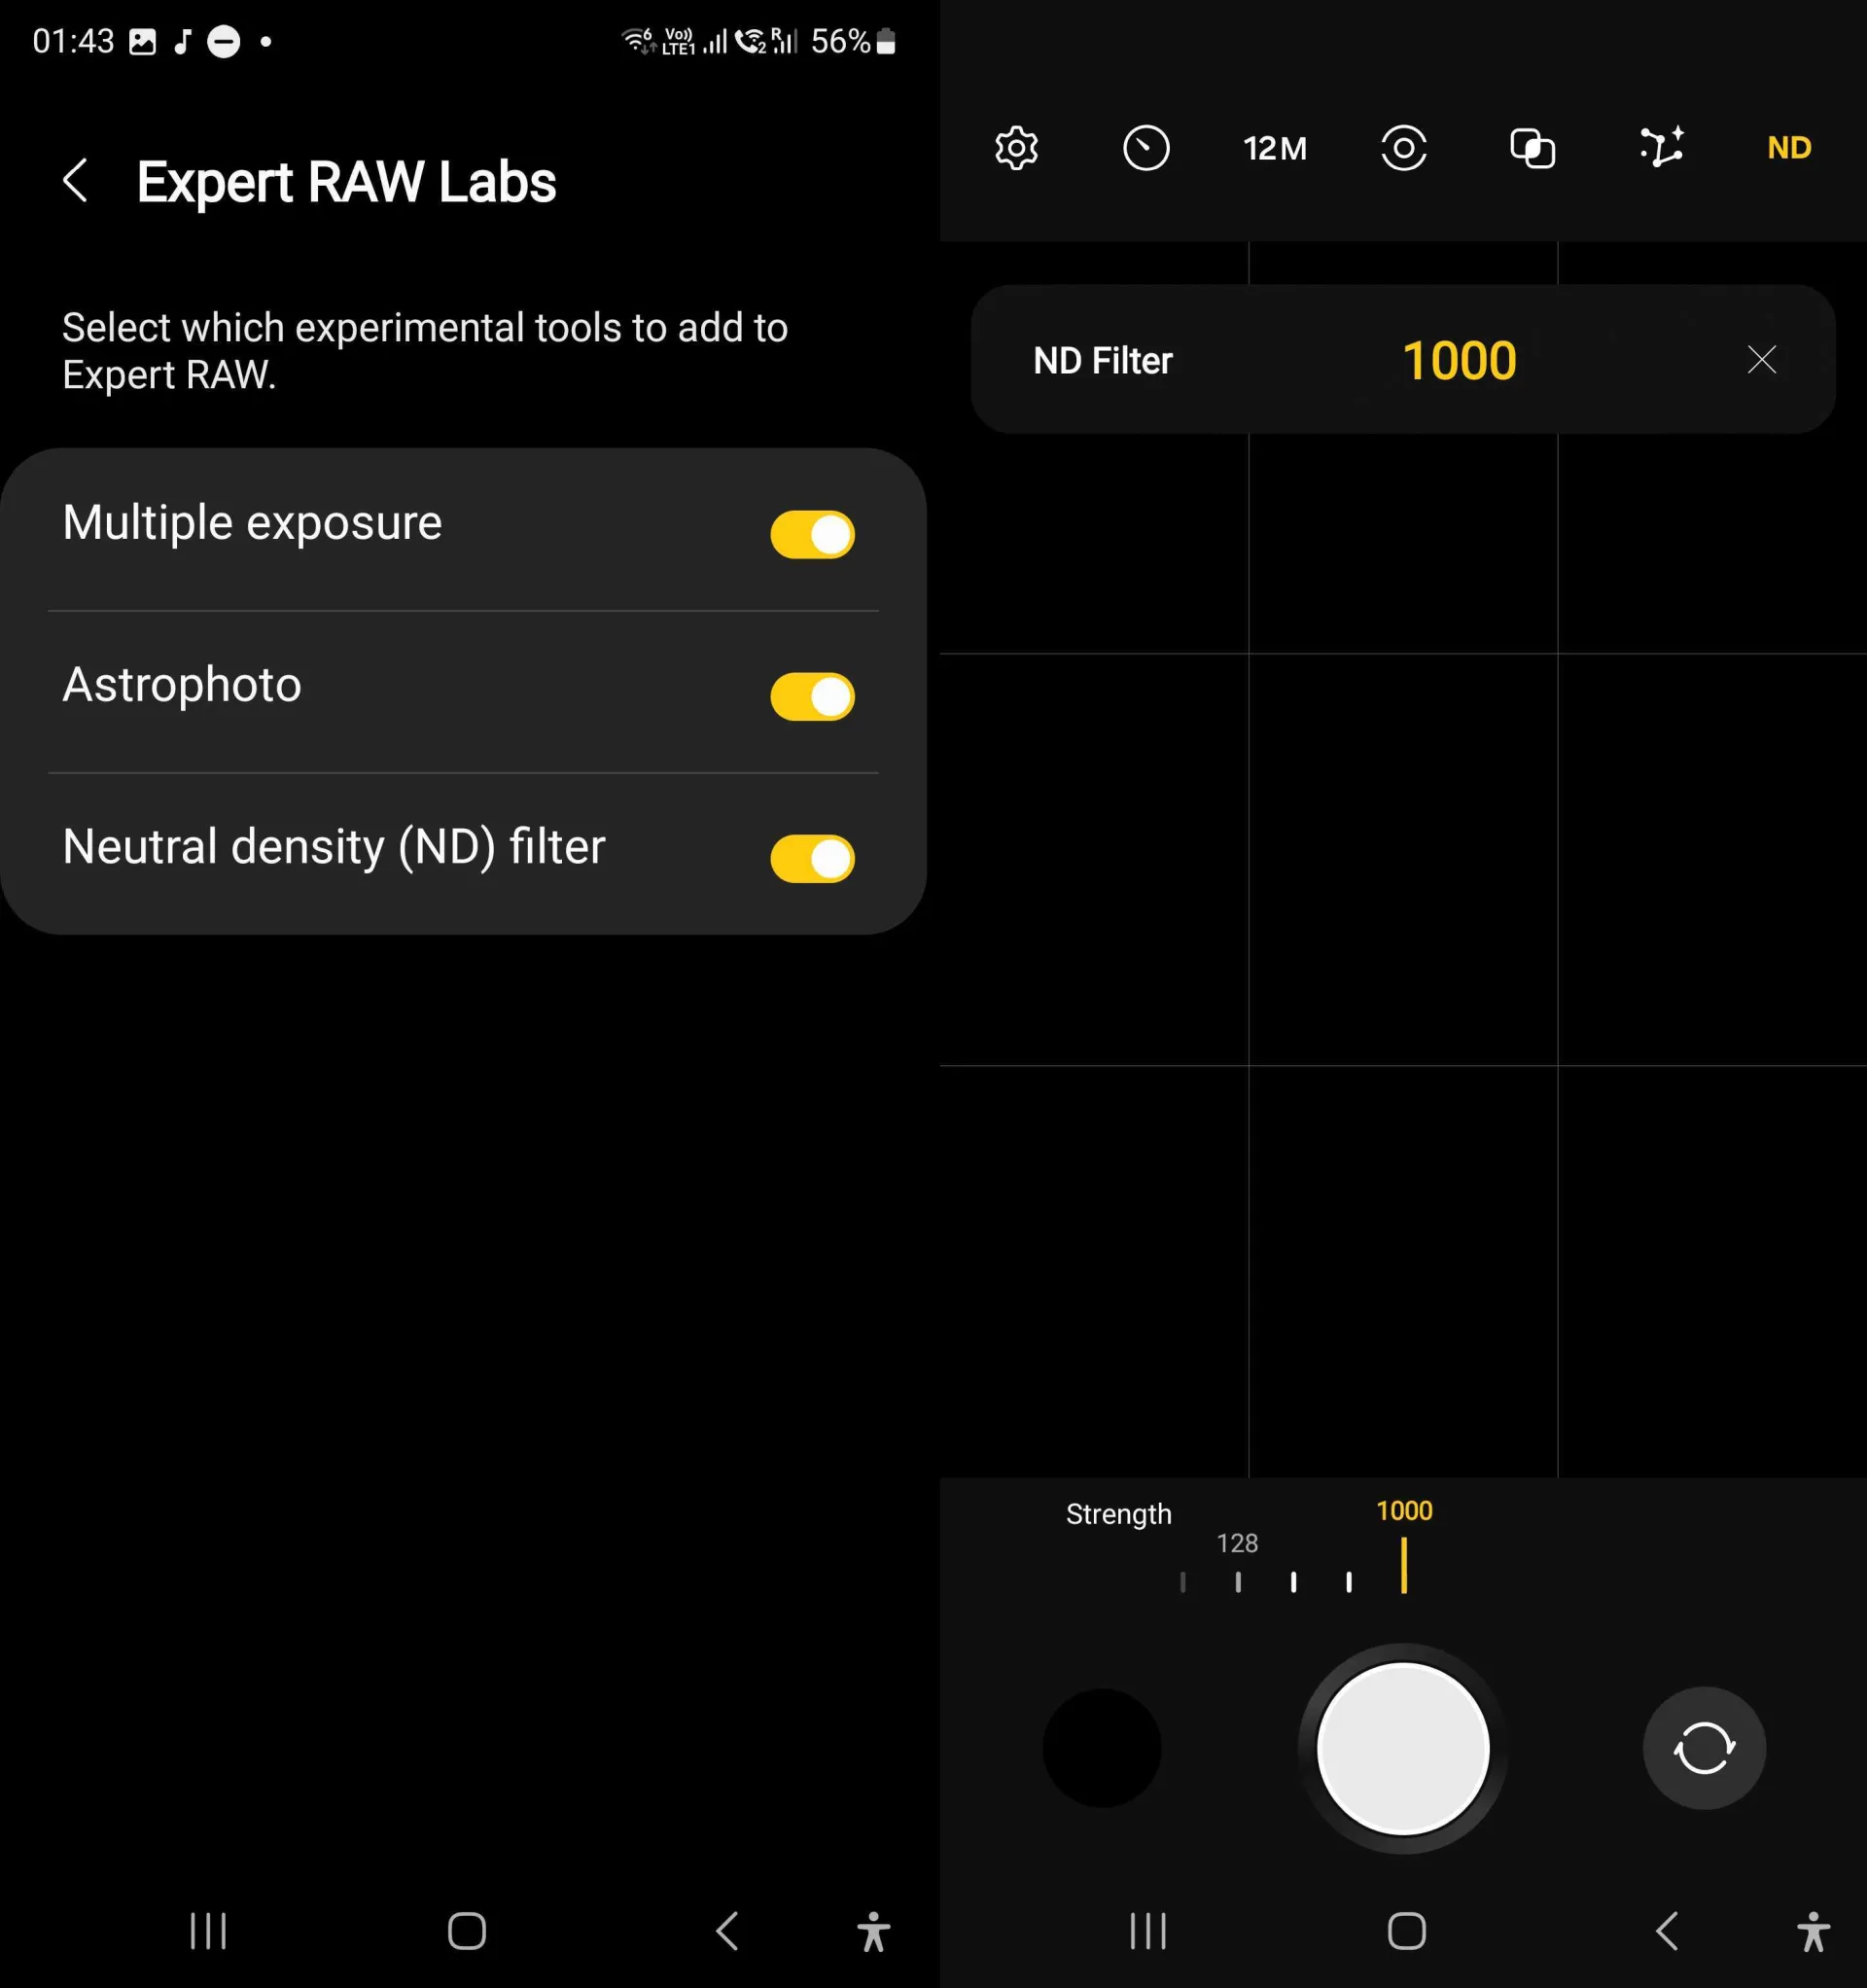 Samsung tung cập nhật thêm tính năng filter ND vào ứng dụng Expert RAW